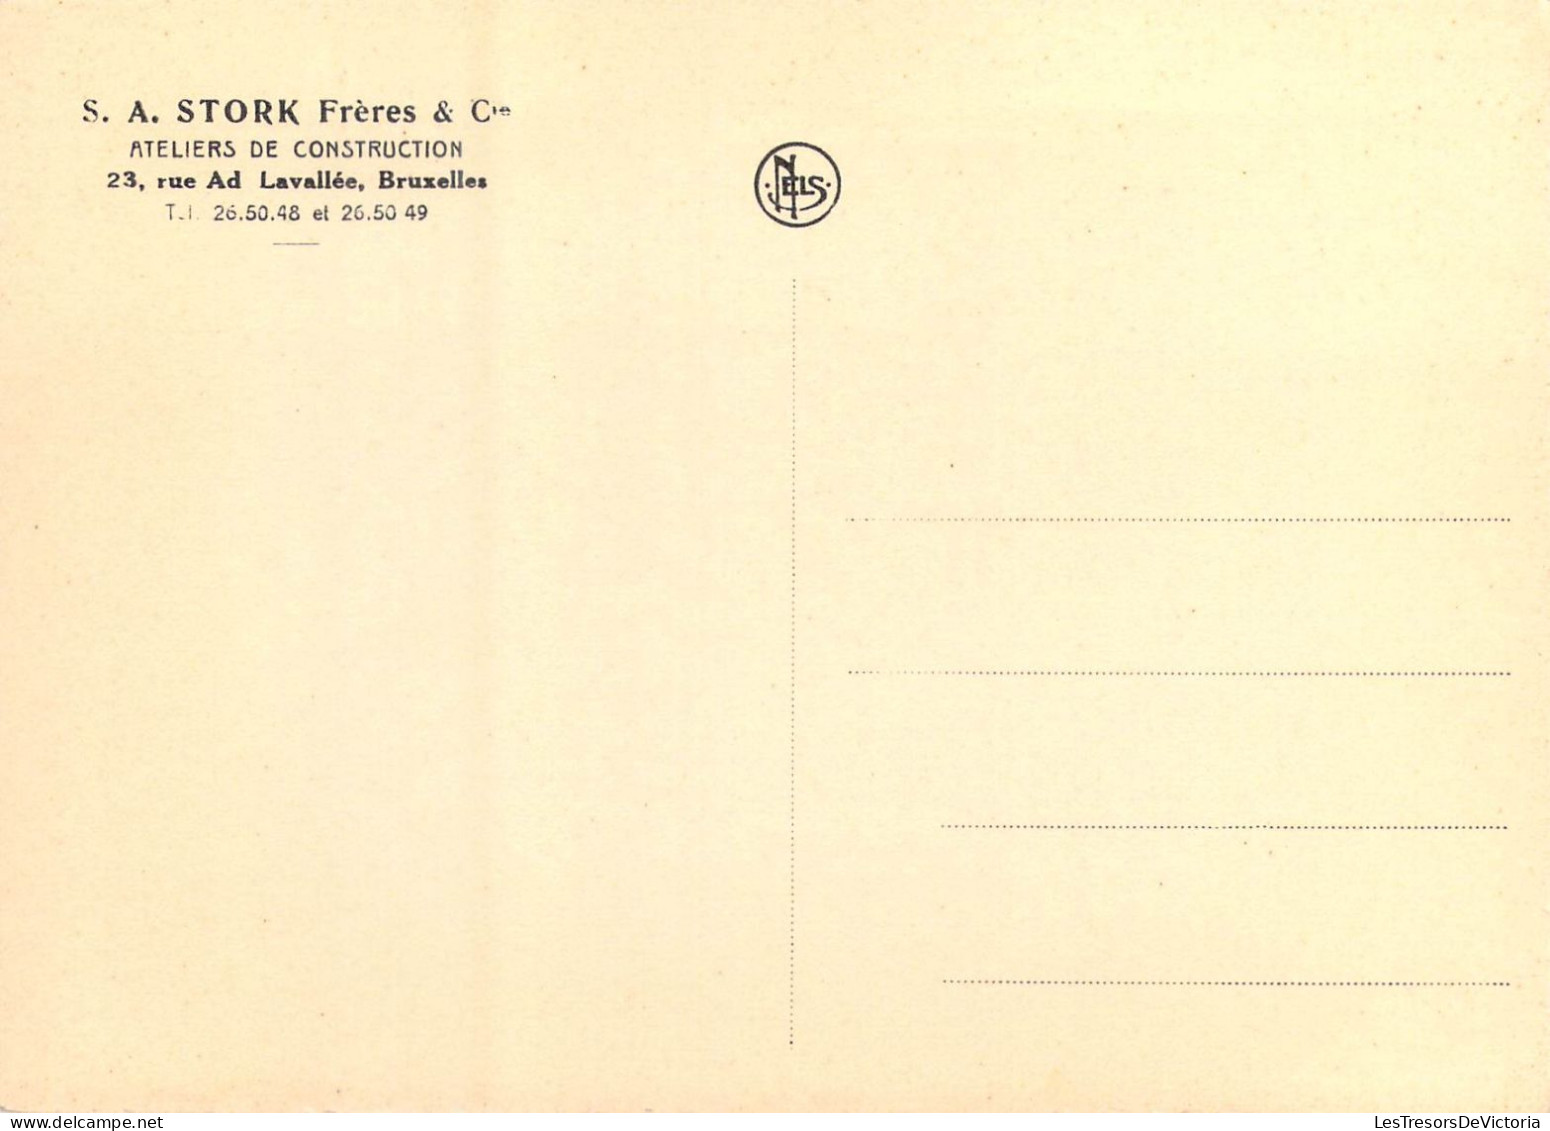 PUBLICITES - S.A. Stork Frères & Cie - Ateliers De Construction - 23 Rue Ad. Lavallée Bruxelles - Carte Postale Ancienne - Werbepostkarten